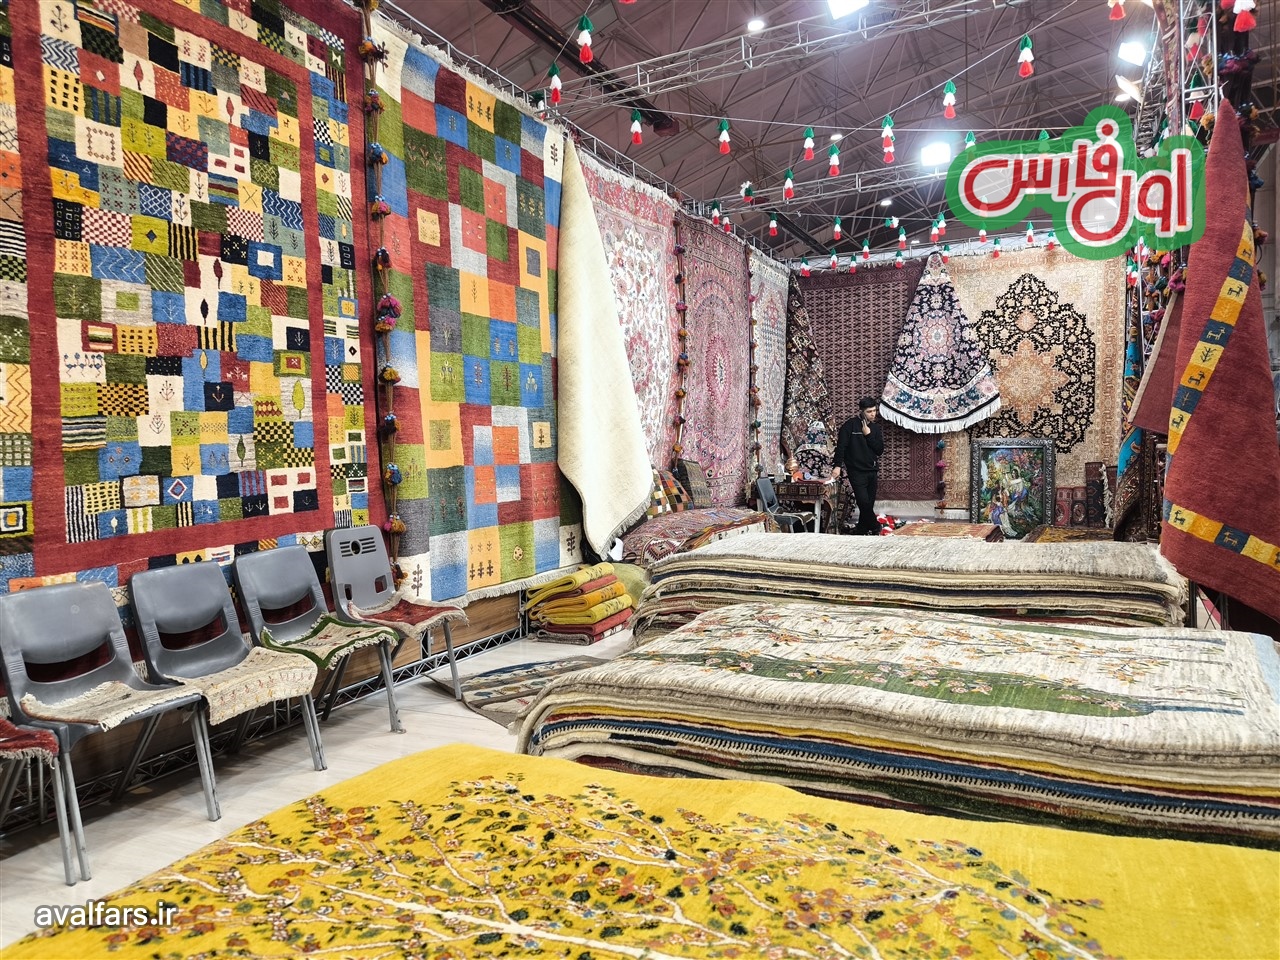 تصاویری زیبا از بیستمین نمایشگاه ملی فرش دستباف در شیراز که باید ببینید